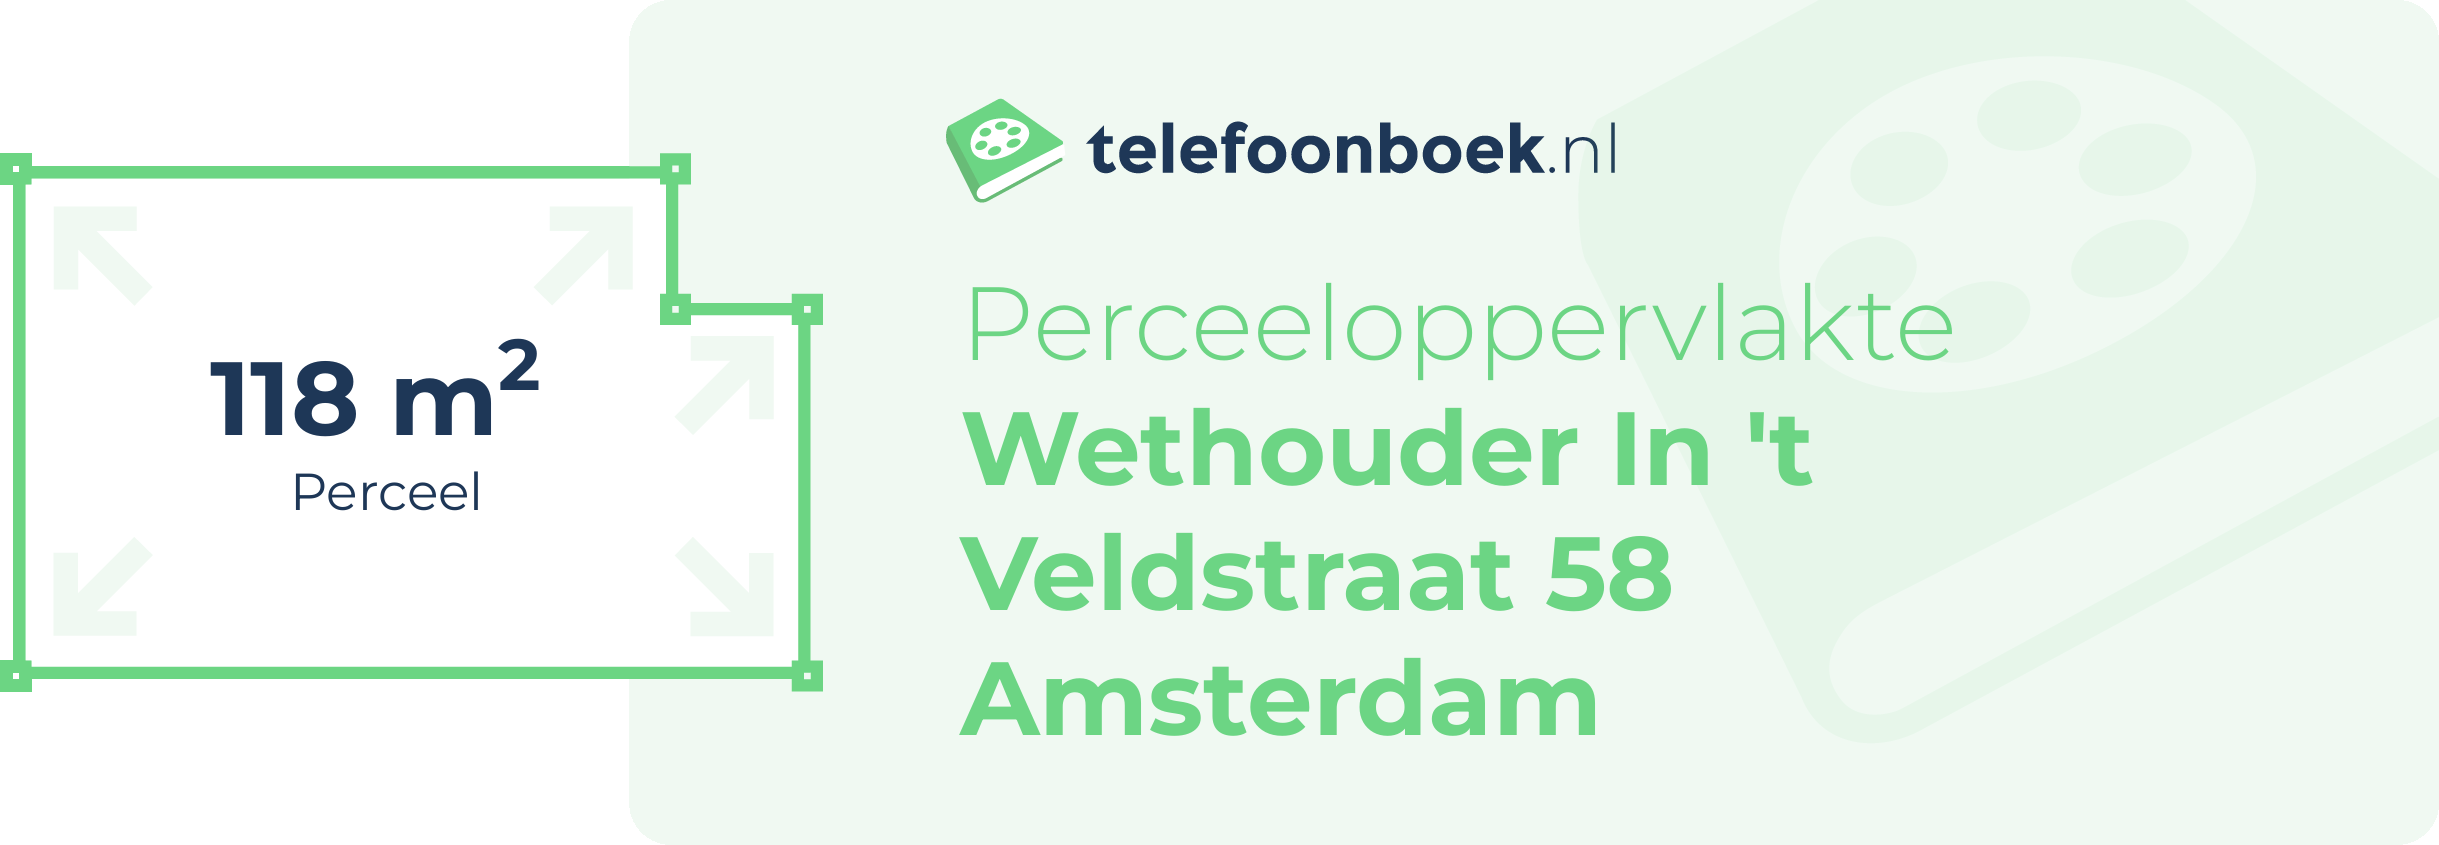 Perceeloppervlakte Wethouder In 't Veldstraat 58 Amsterdam